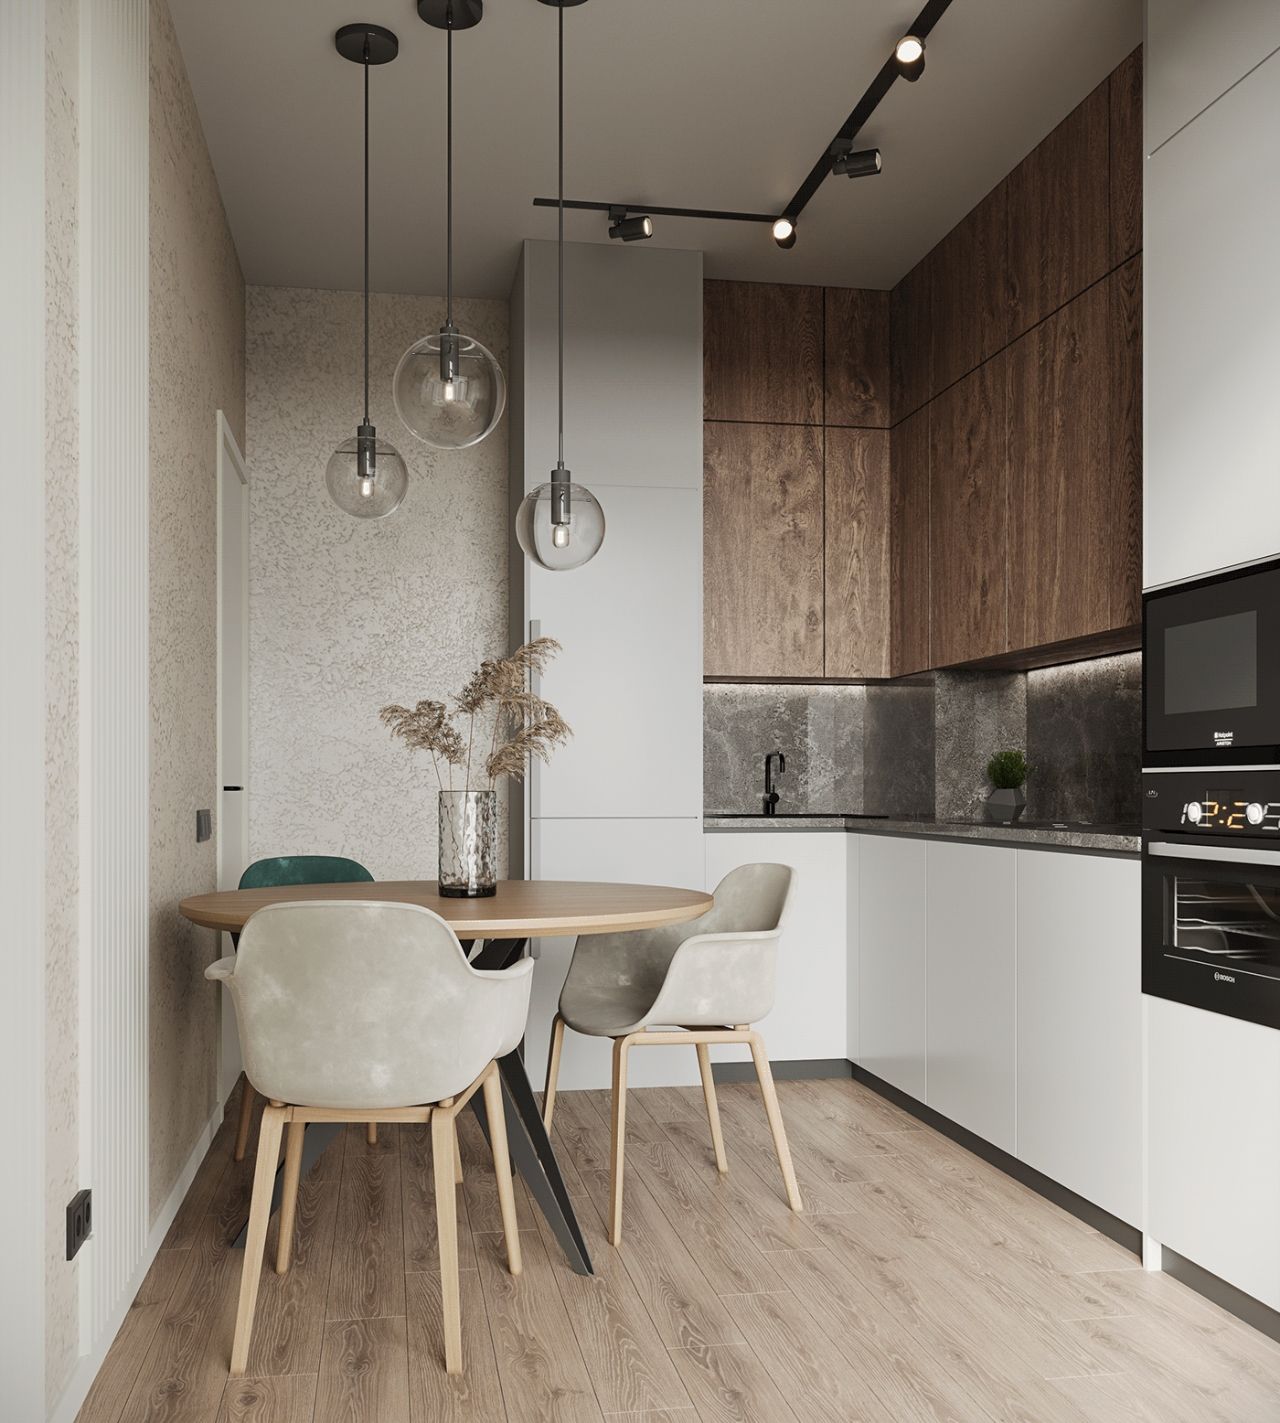 Thiết kế phòng bếp căn hộ chung cư nhỏ màu trắng - gỗ hiện đại